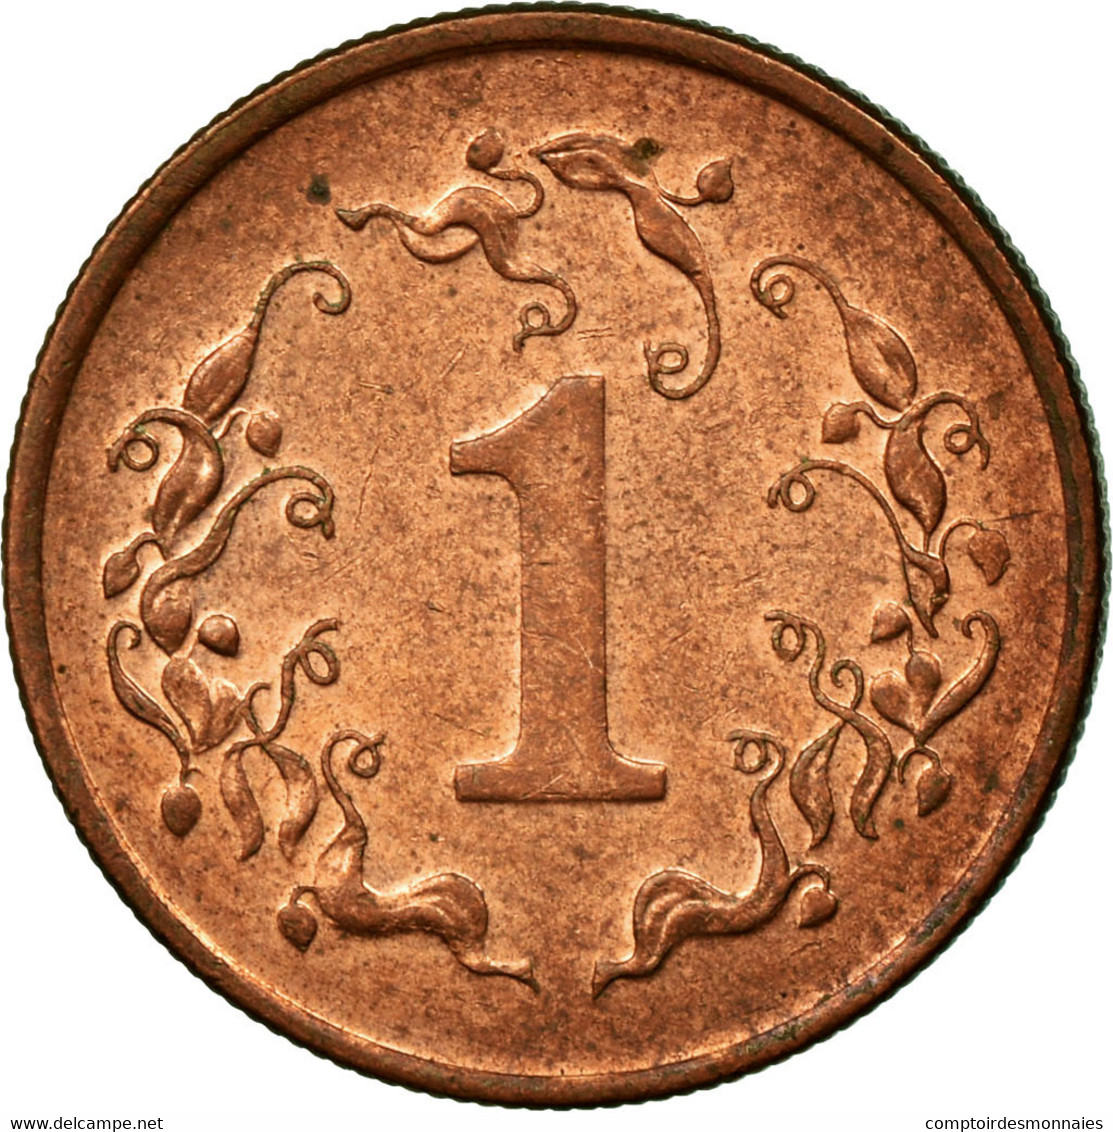 Monnaie, Zimbabwe, Cent, 1991, TTB, Bronze Plated Steel, KM:1a - Zimbabwe